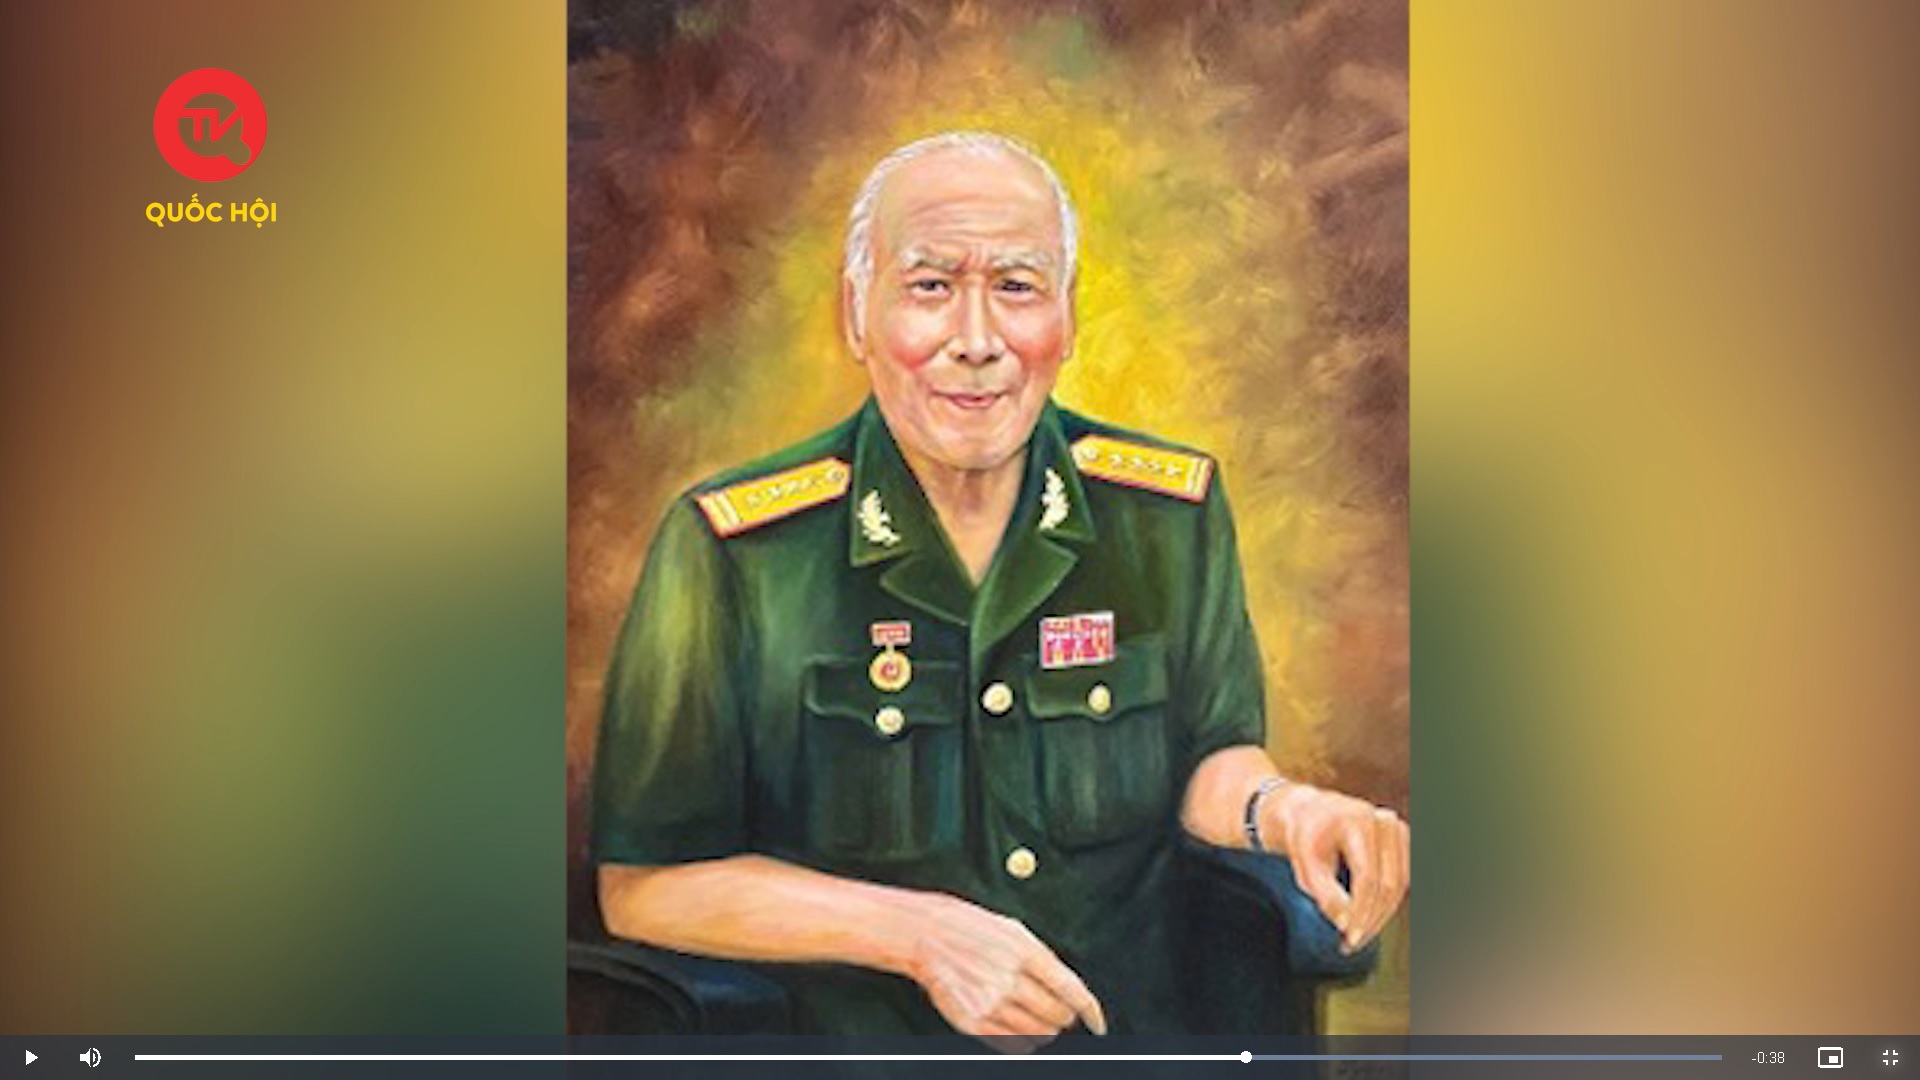 Mong sớm vinh danh Anh hùng cho Đại tá Bùi Văn Tùng bởi người cựu chính ủy lữ đoàn nay tuổi đã cao, sức đã yếu